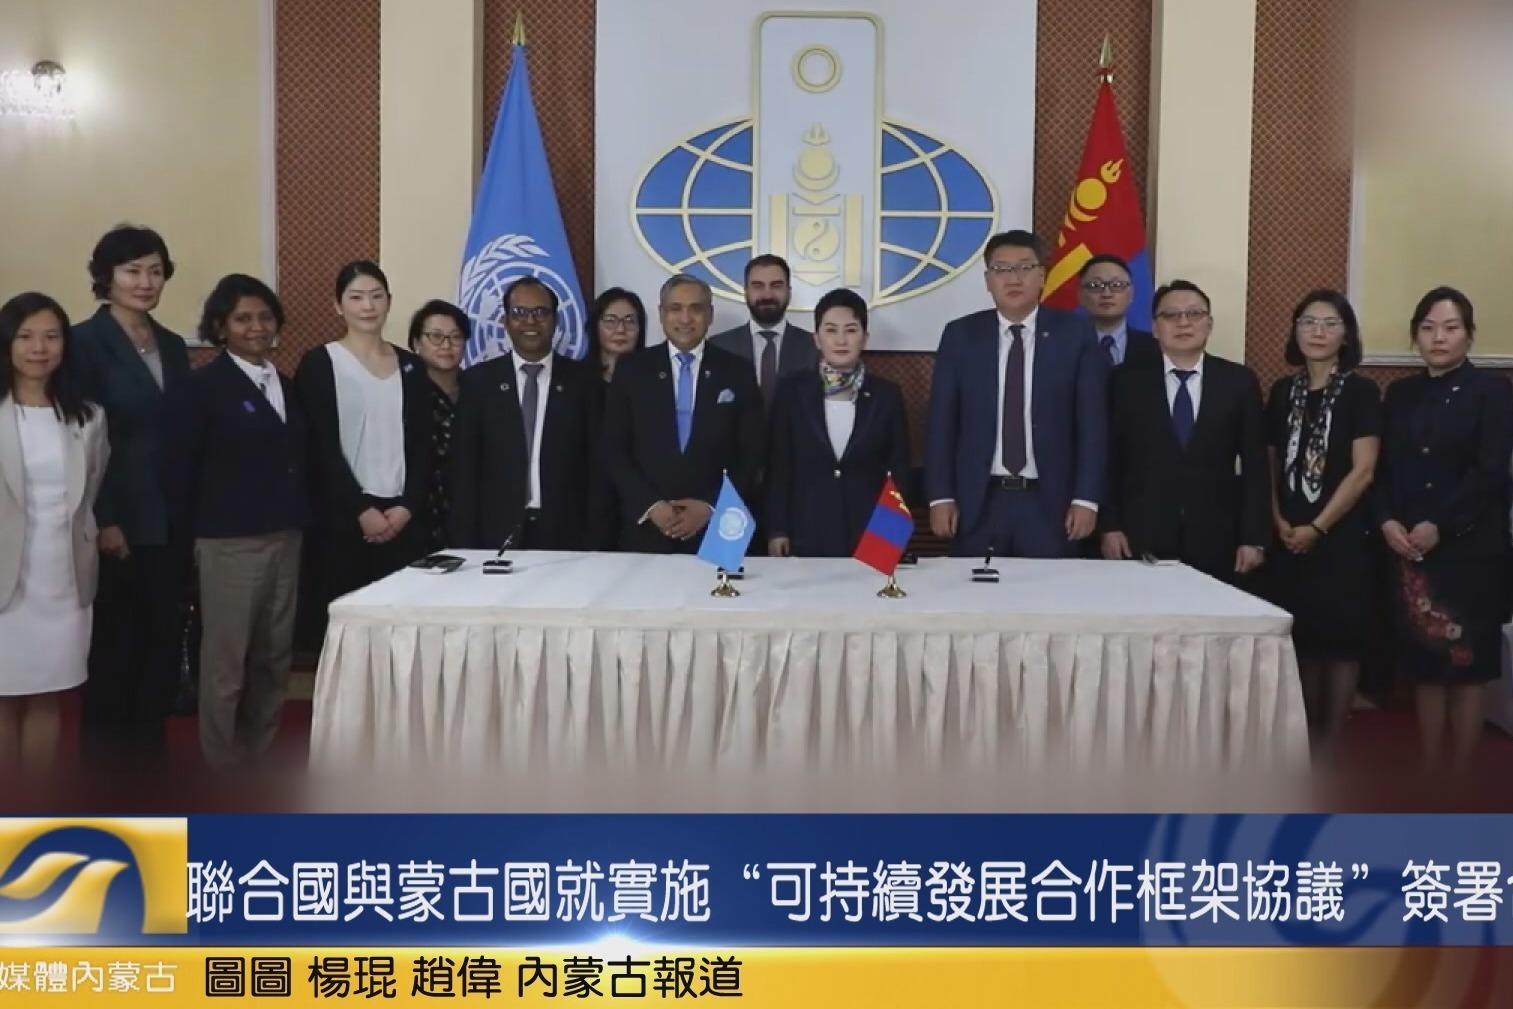 联合国与蒙古国就实施“可持续发展合作框架协议”签署合作文件